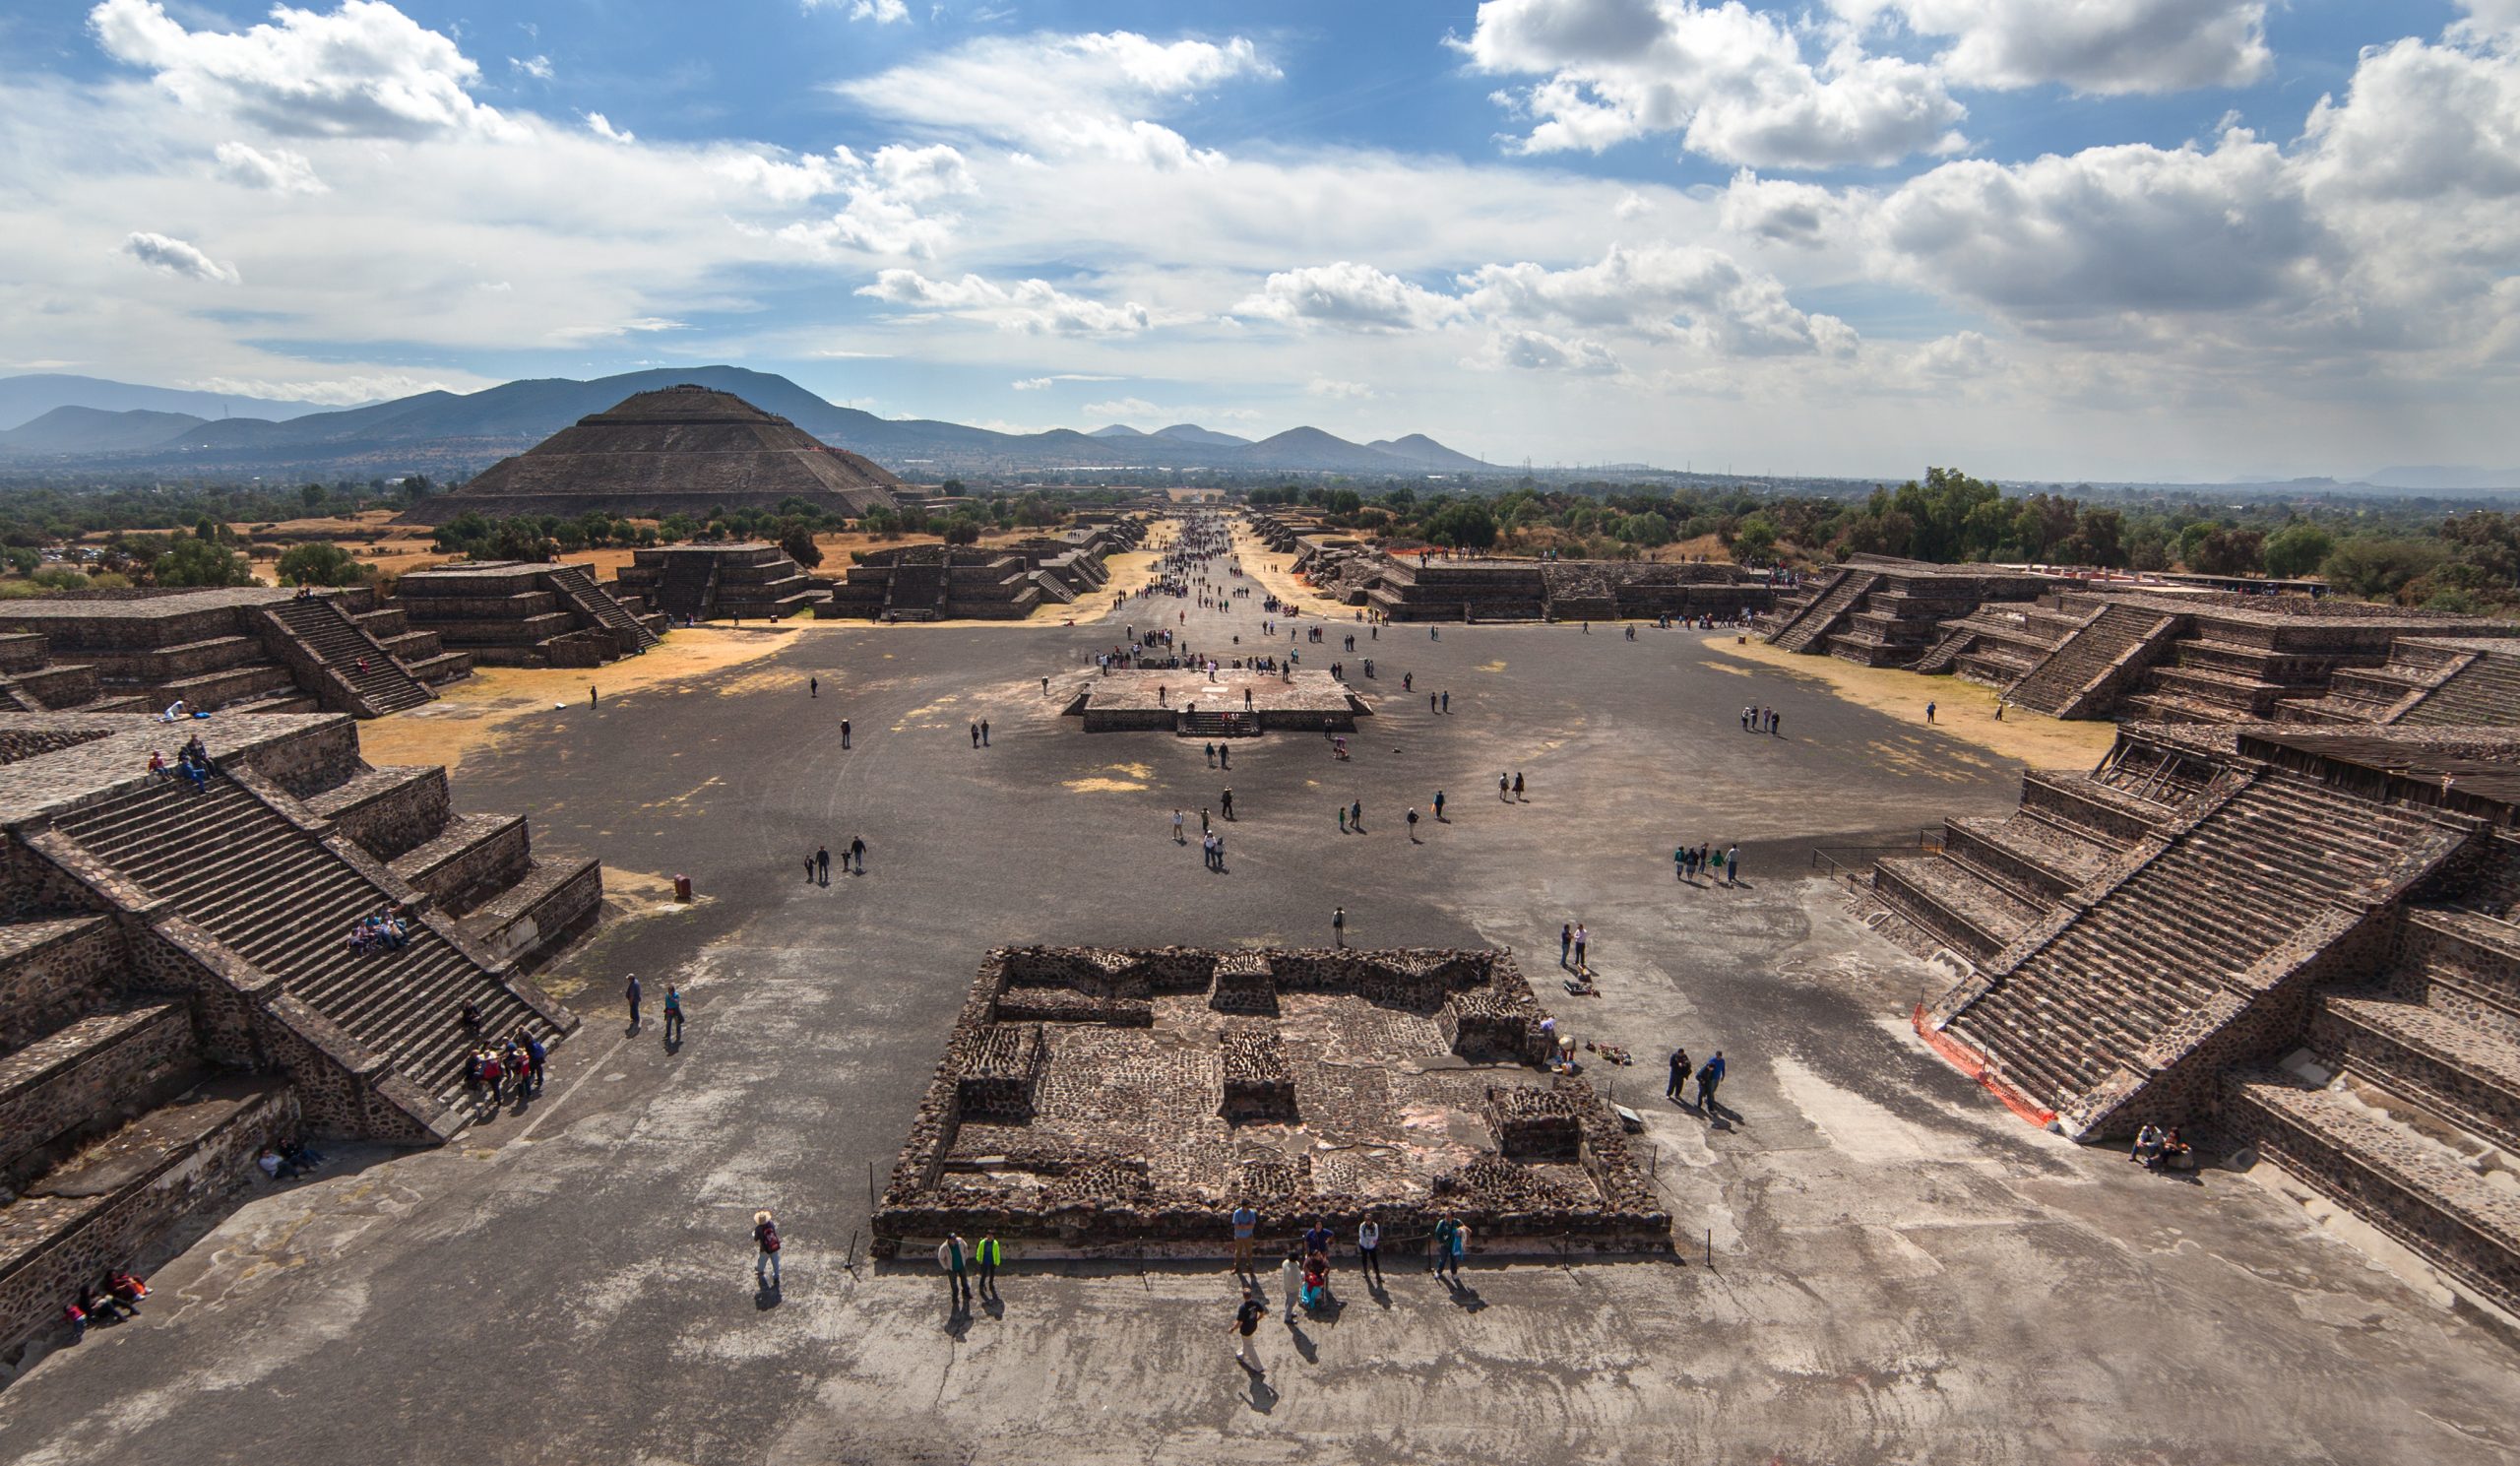 Linda Manzanilla relató en El Colnal cómo Teotihuacan resultó ser un reto intelectual